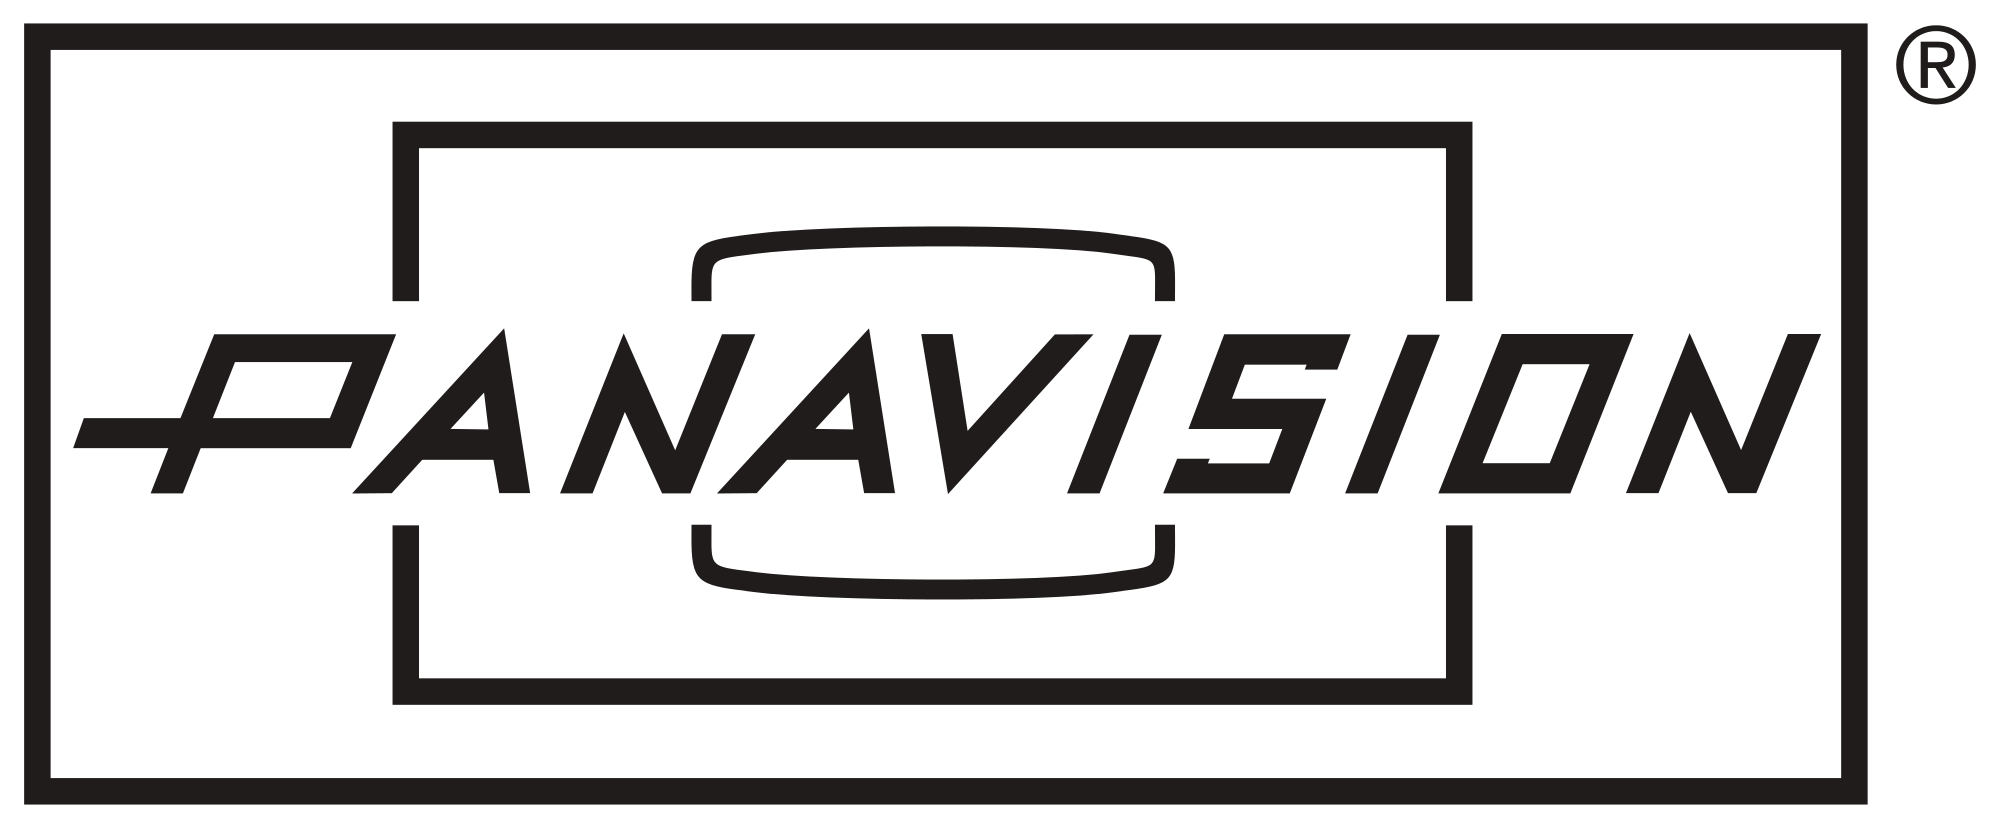 Panavision Logo - Panavision logo.svg